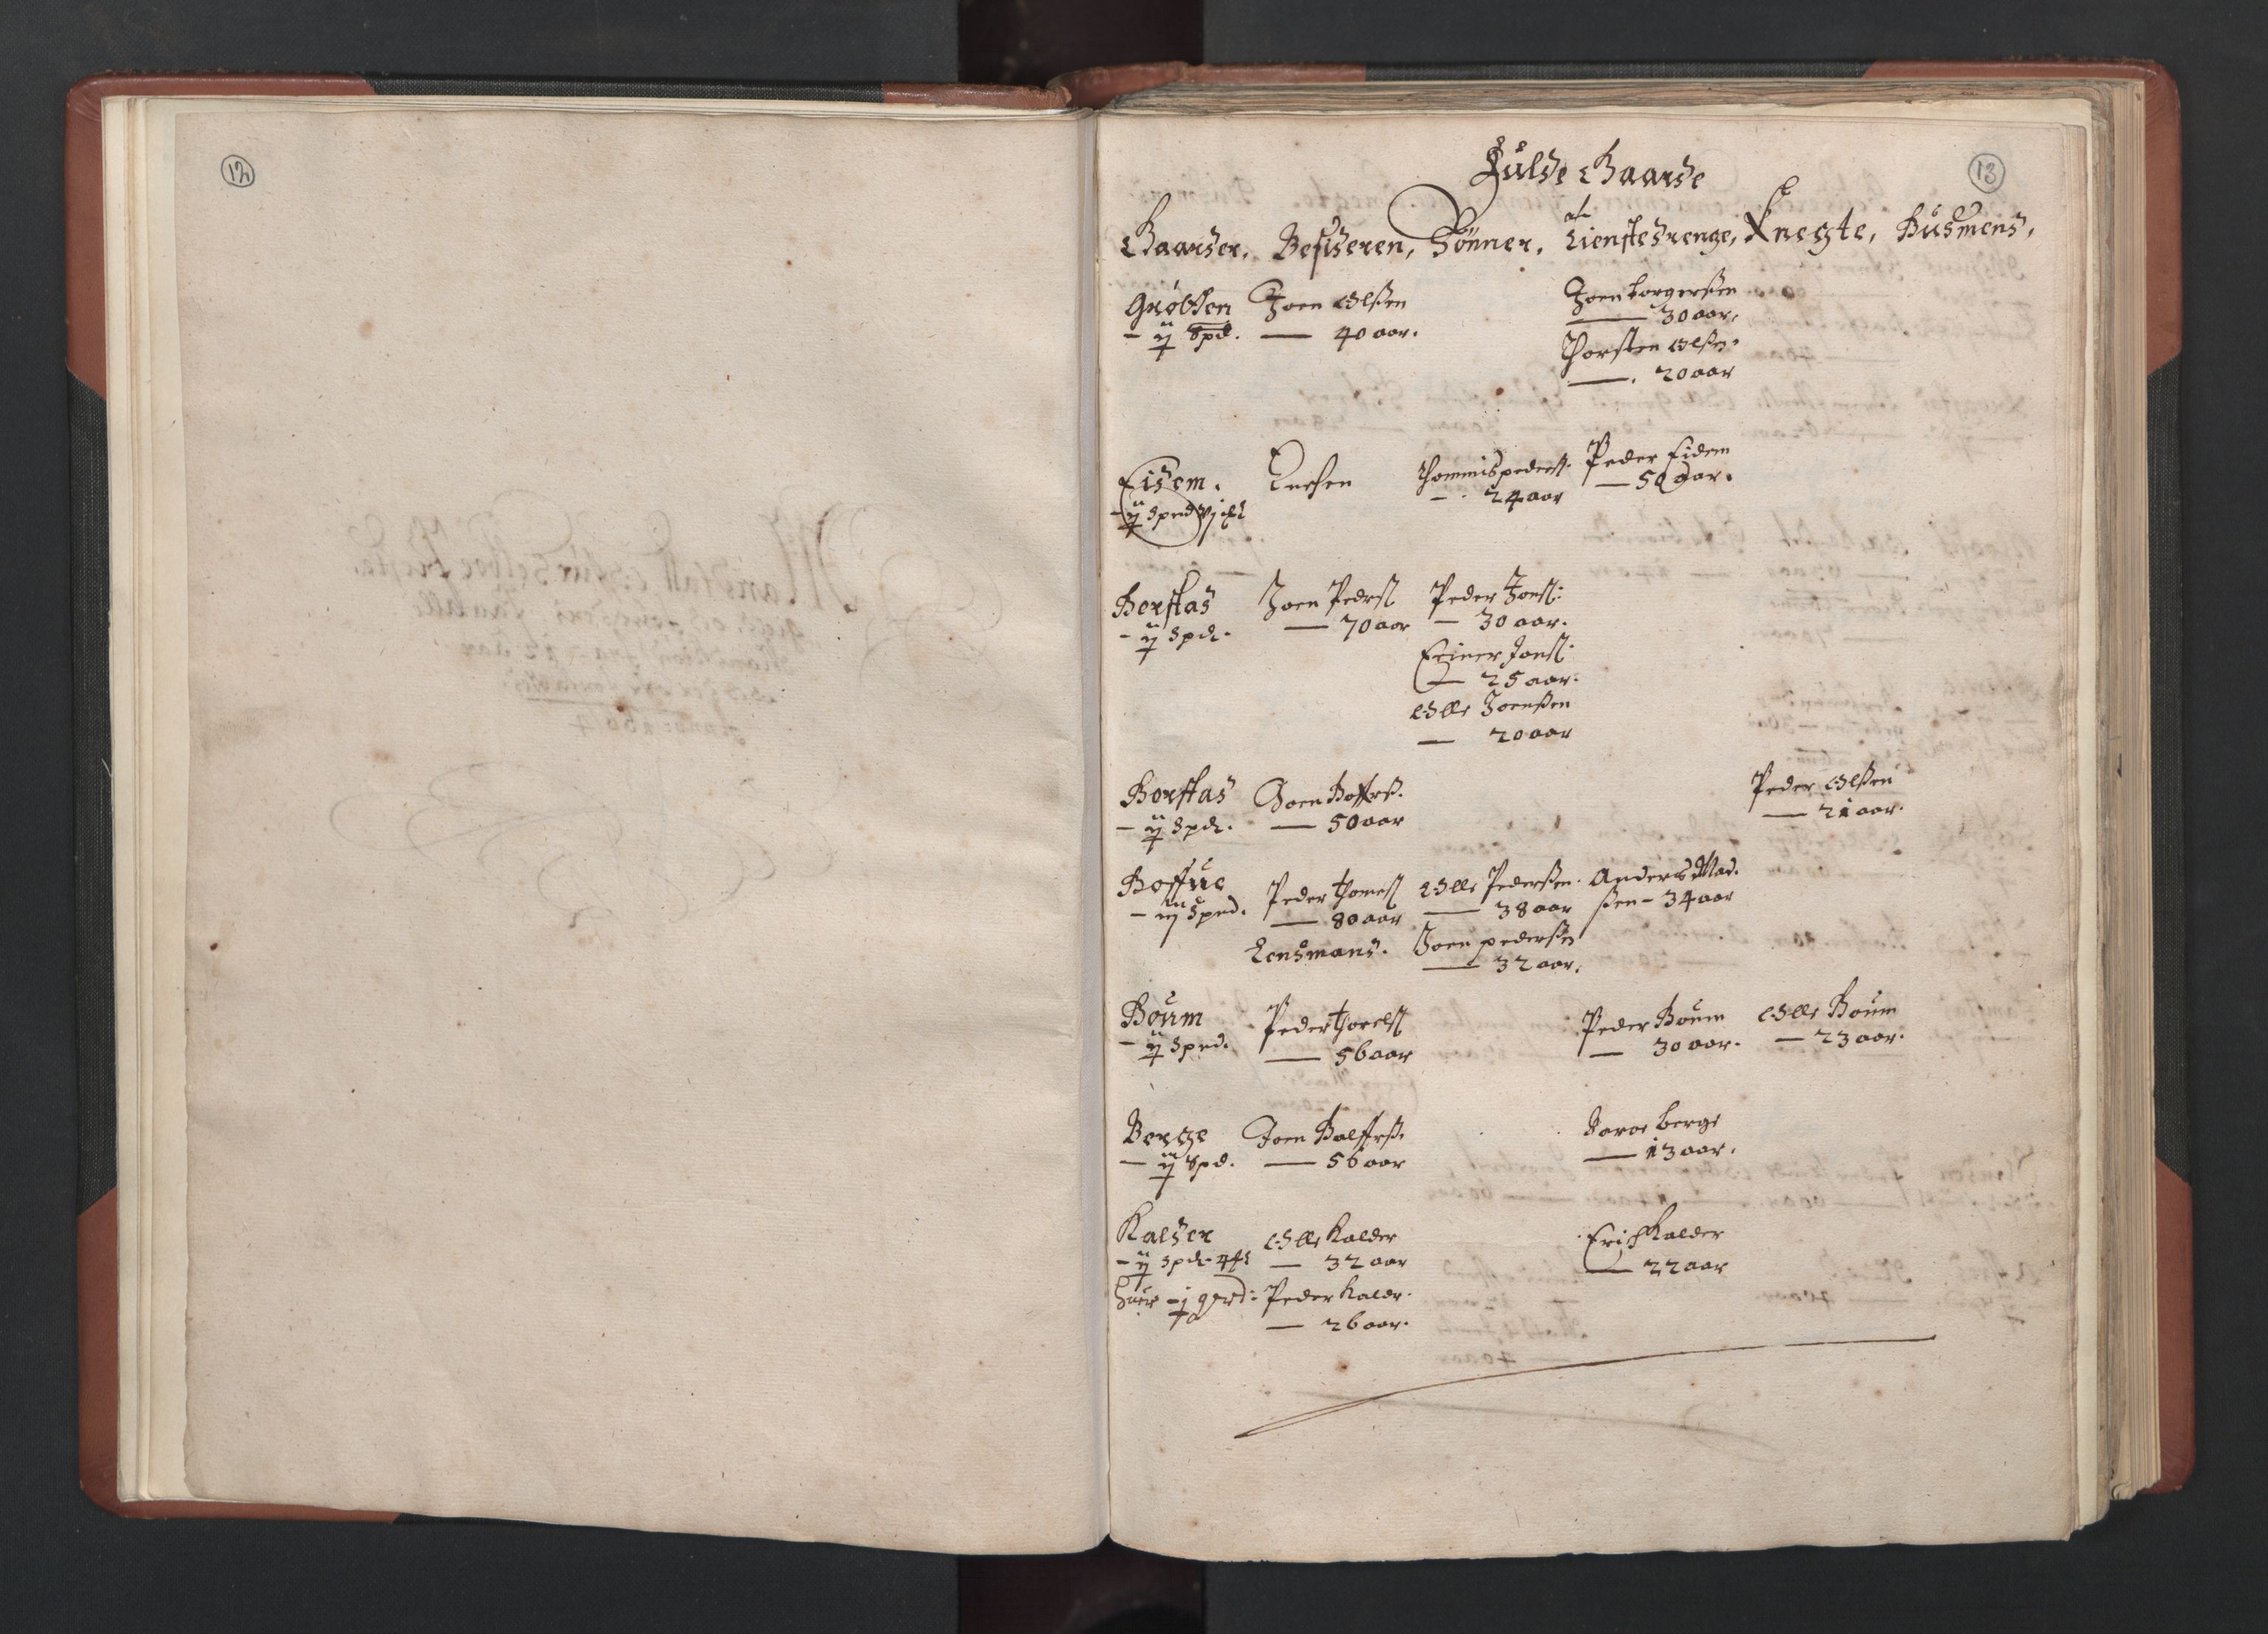 RA, Bailiff's Census 1664-1666, no. 19: Fosen fogderi, Inderøy fogderi, Selbu fogderi, Namdal fogderi and Stjørdal fogderi, 1664-1665, p. 12-13